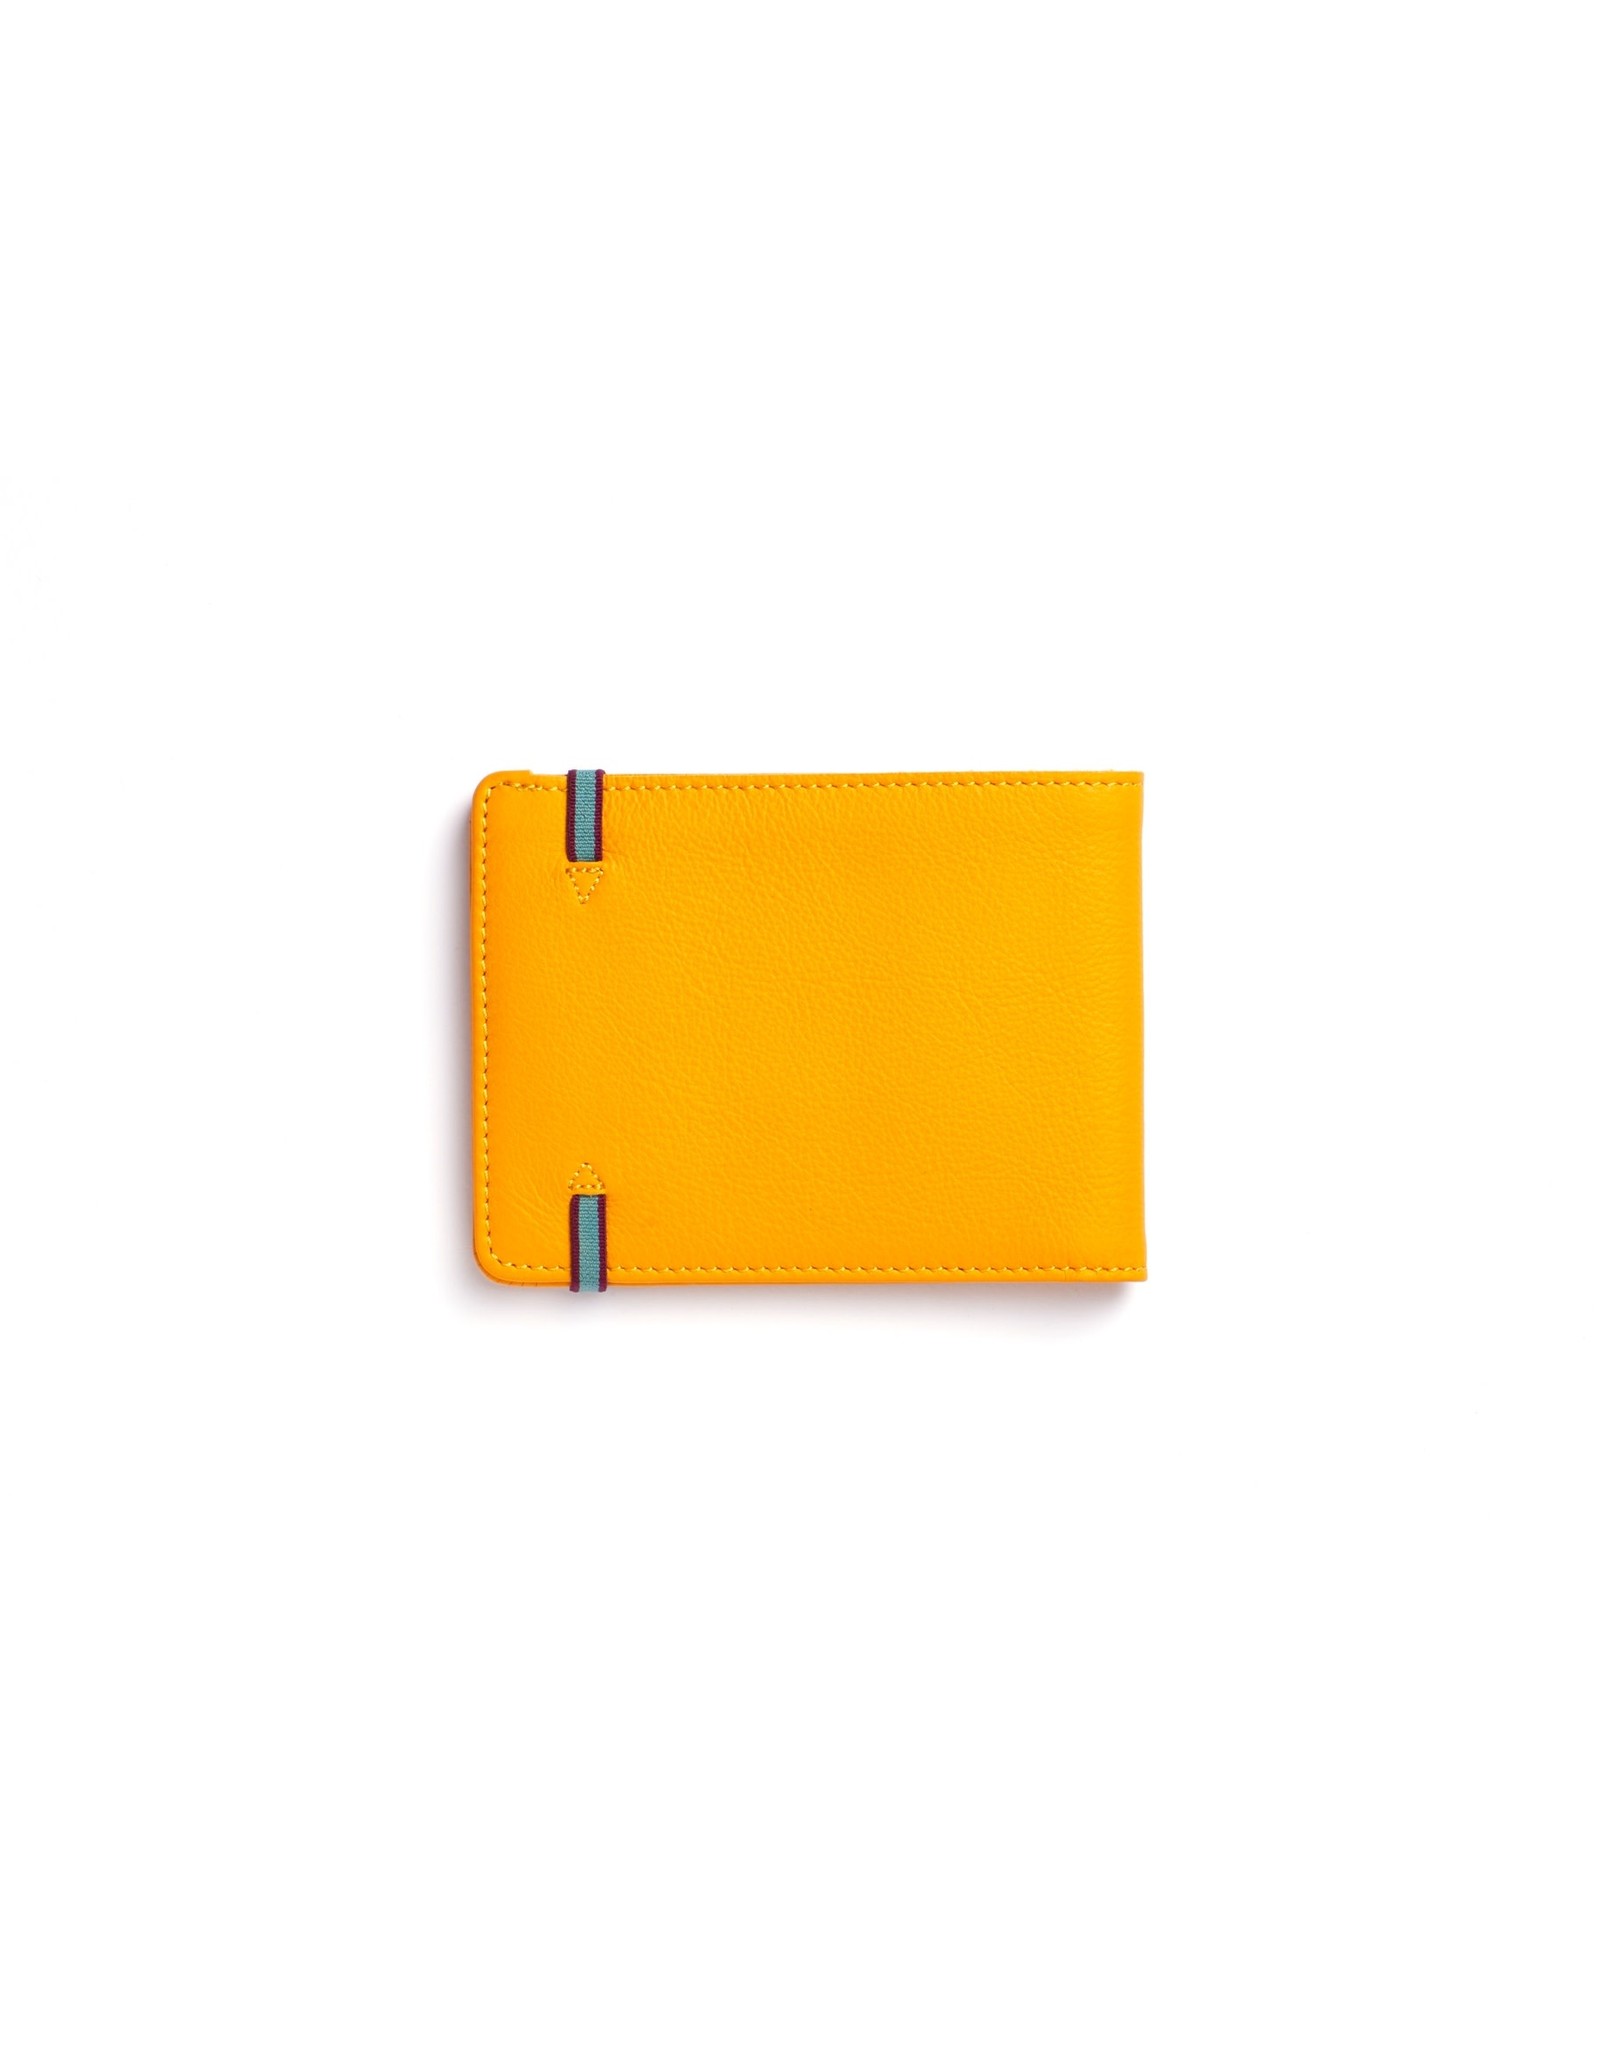 Gele portemonnee met elastiek